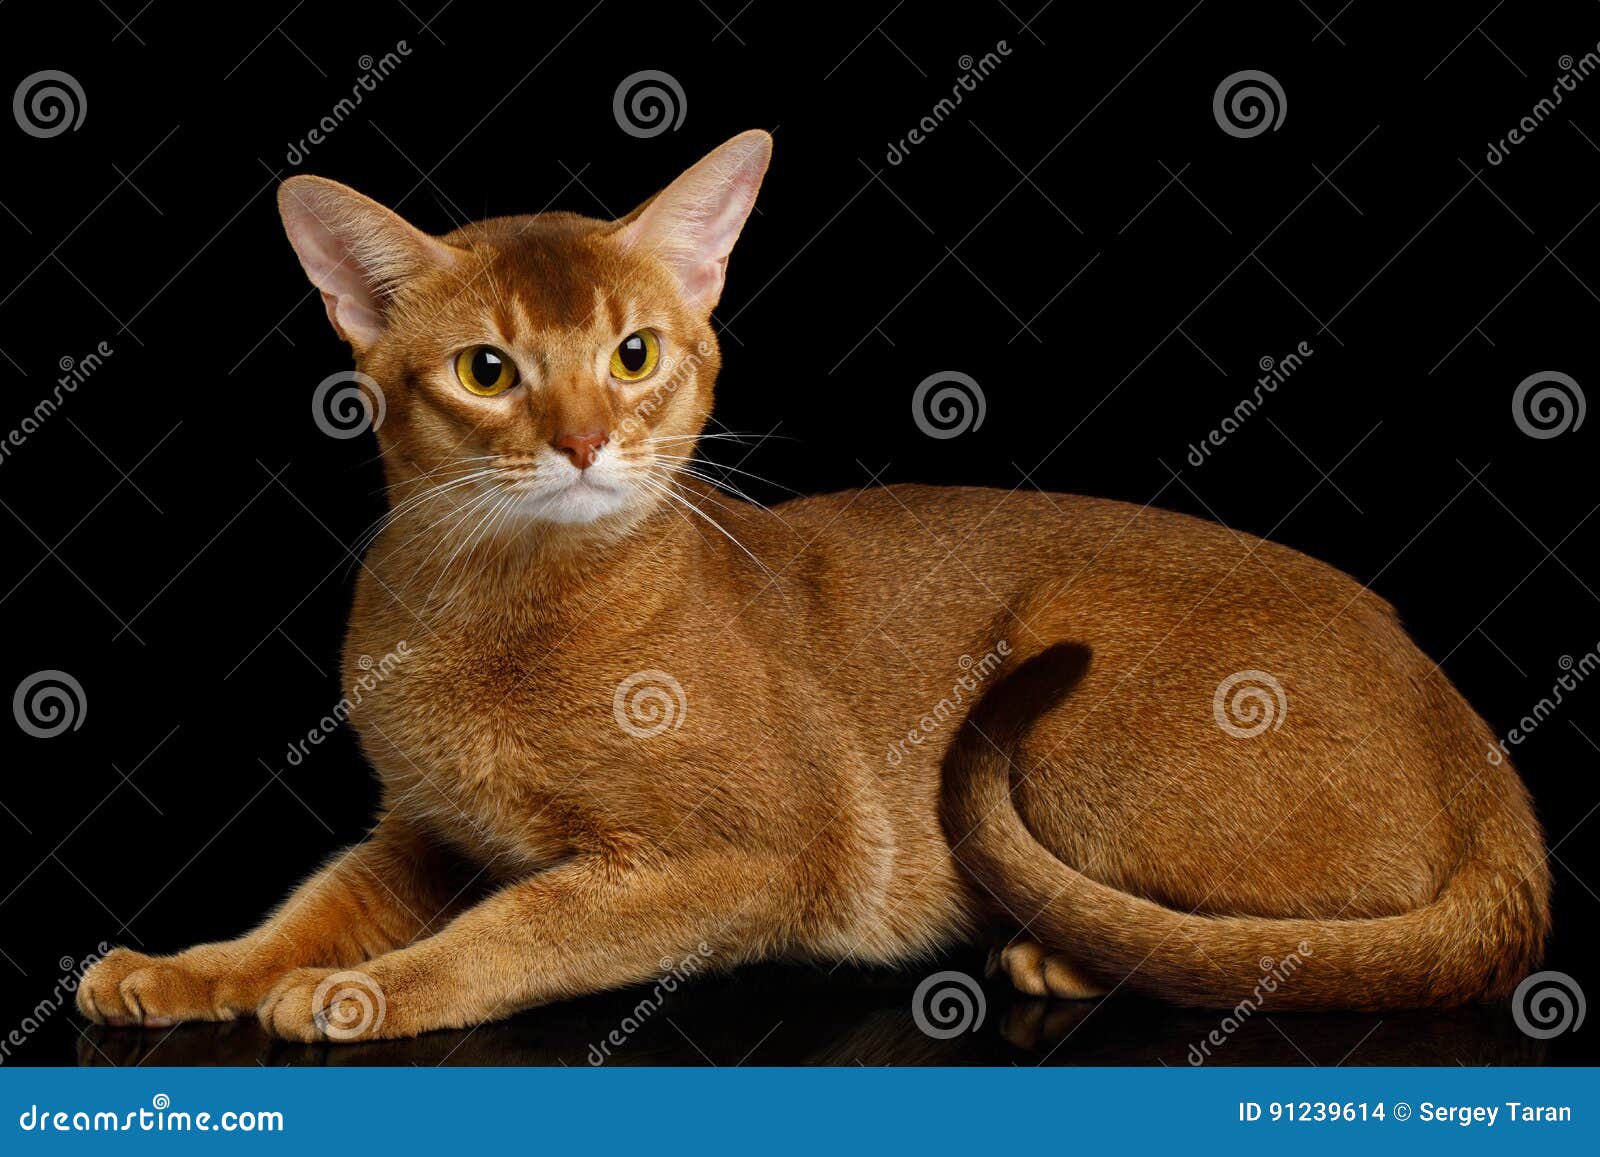 Reinrassige abyssinische Katze lokalisiert auf schwarzem Hintergrund. Abyssinier Cat Lying mit dem neugierigen Gesicht, lokalisiert auf schwarzem Hintergrund mit Reflexion